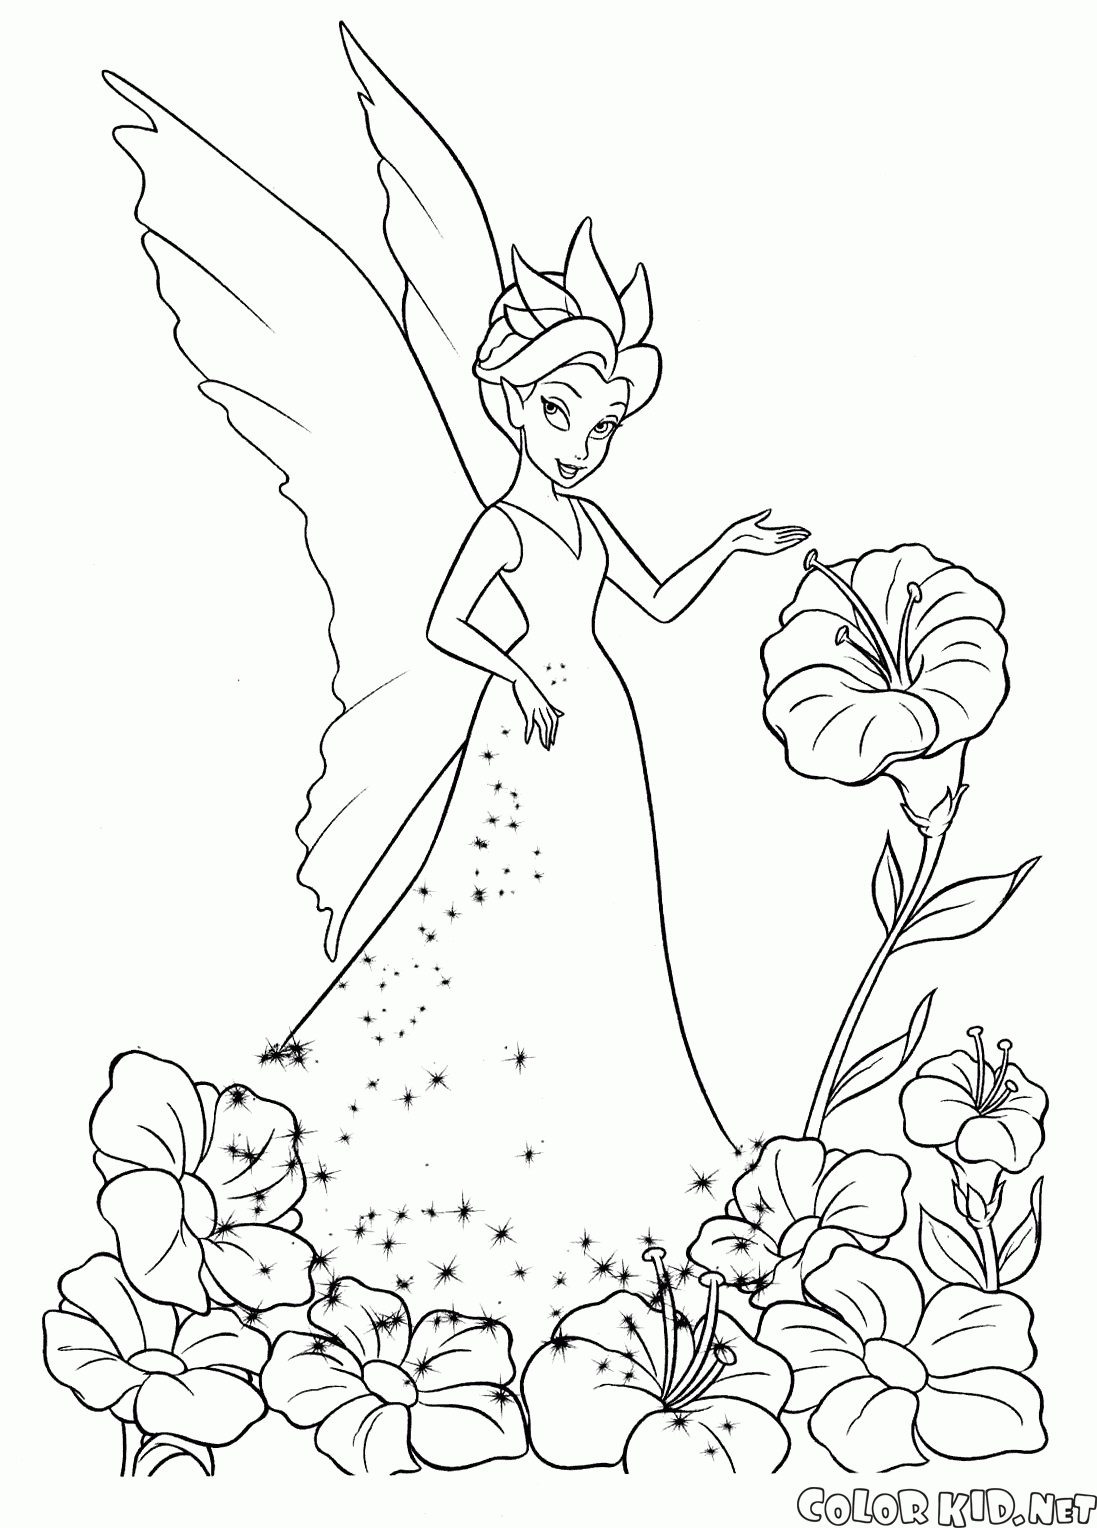 Fairy near a flower